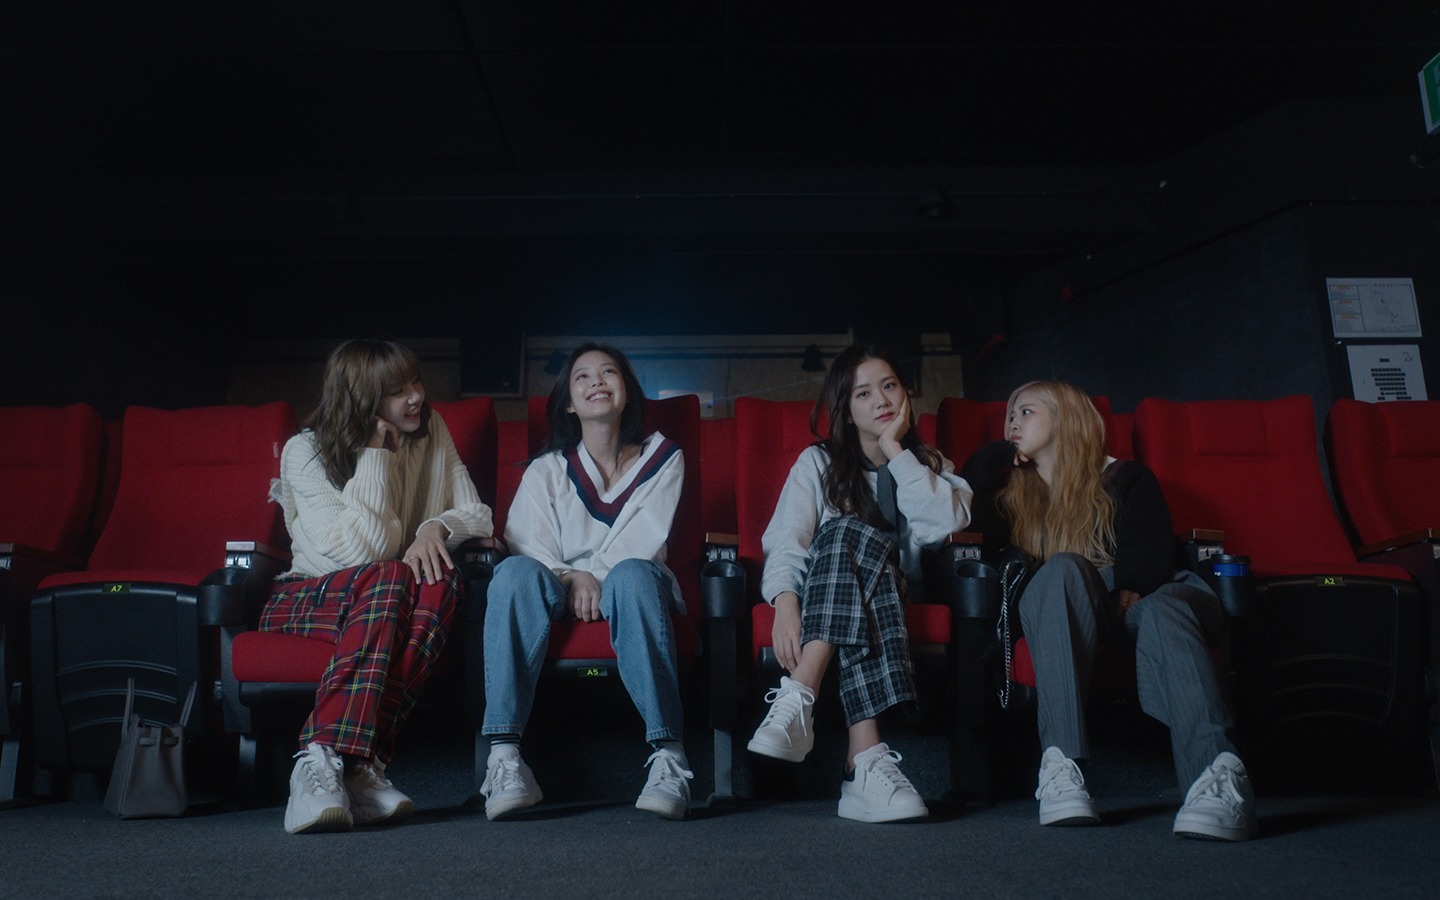 Blackpink: Light Up the Sky mostra o lado mais humano da indústria musical sul-coreana 